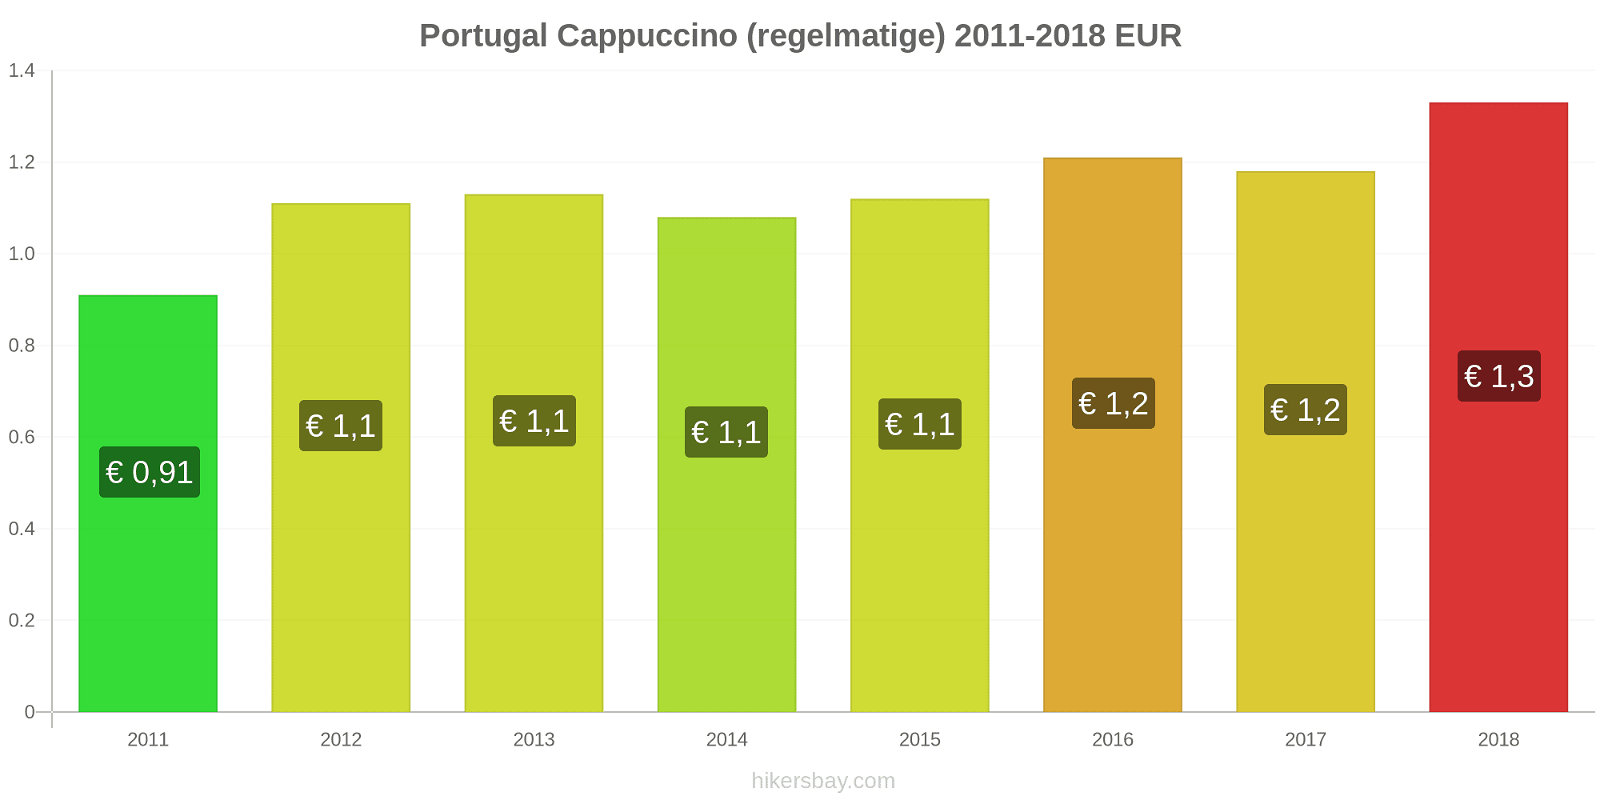 Portugal prijswijzigingen Cappuccino hikersbay.com